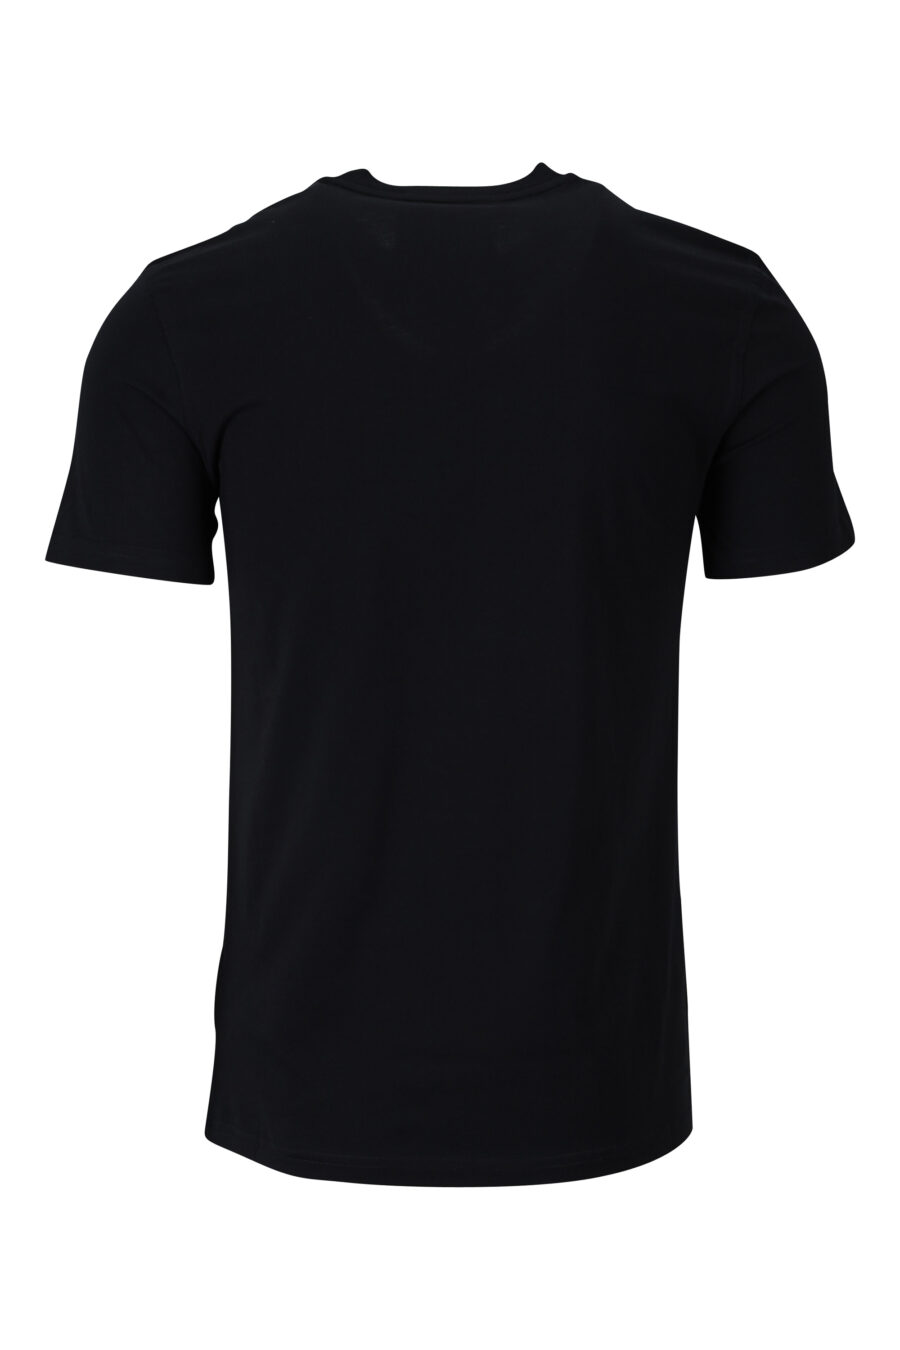 T-shirt preta de algodão orgânico com maxilogo "teddy" - 889316854589 1